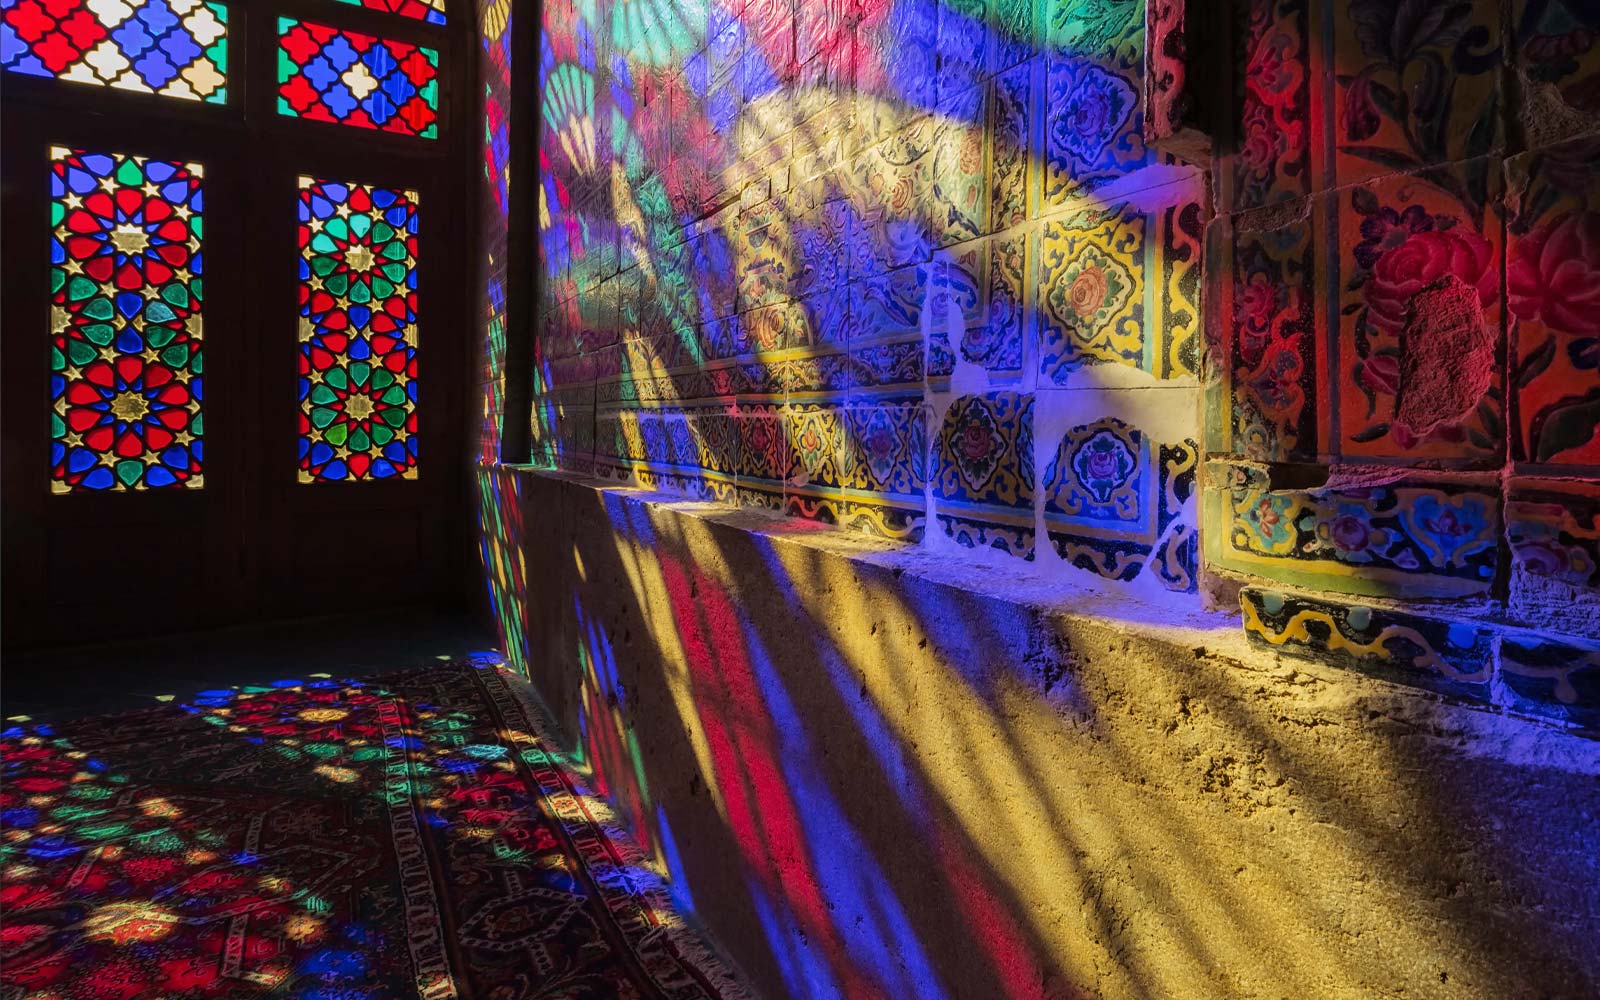 مشهد يُظهر به ضوء ساطع من خلال النوافذ الزجاجية الملونة لعرض الألوان على الجدار (تشغيل الفيديو).